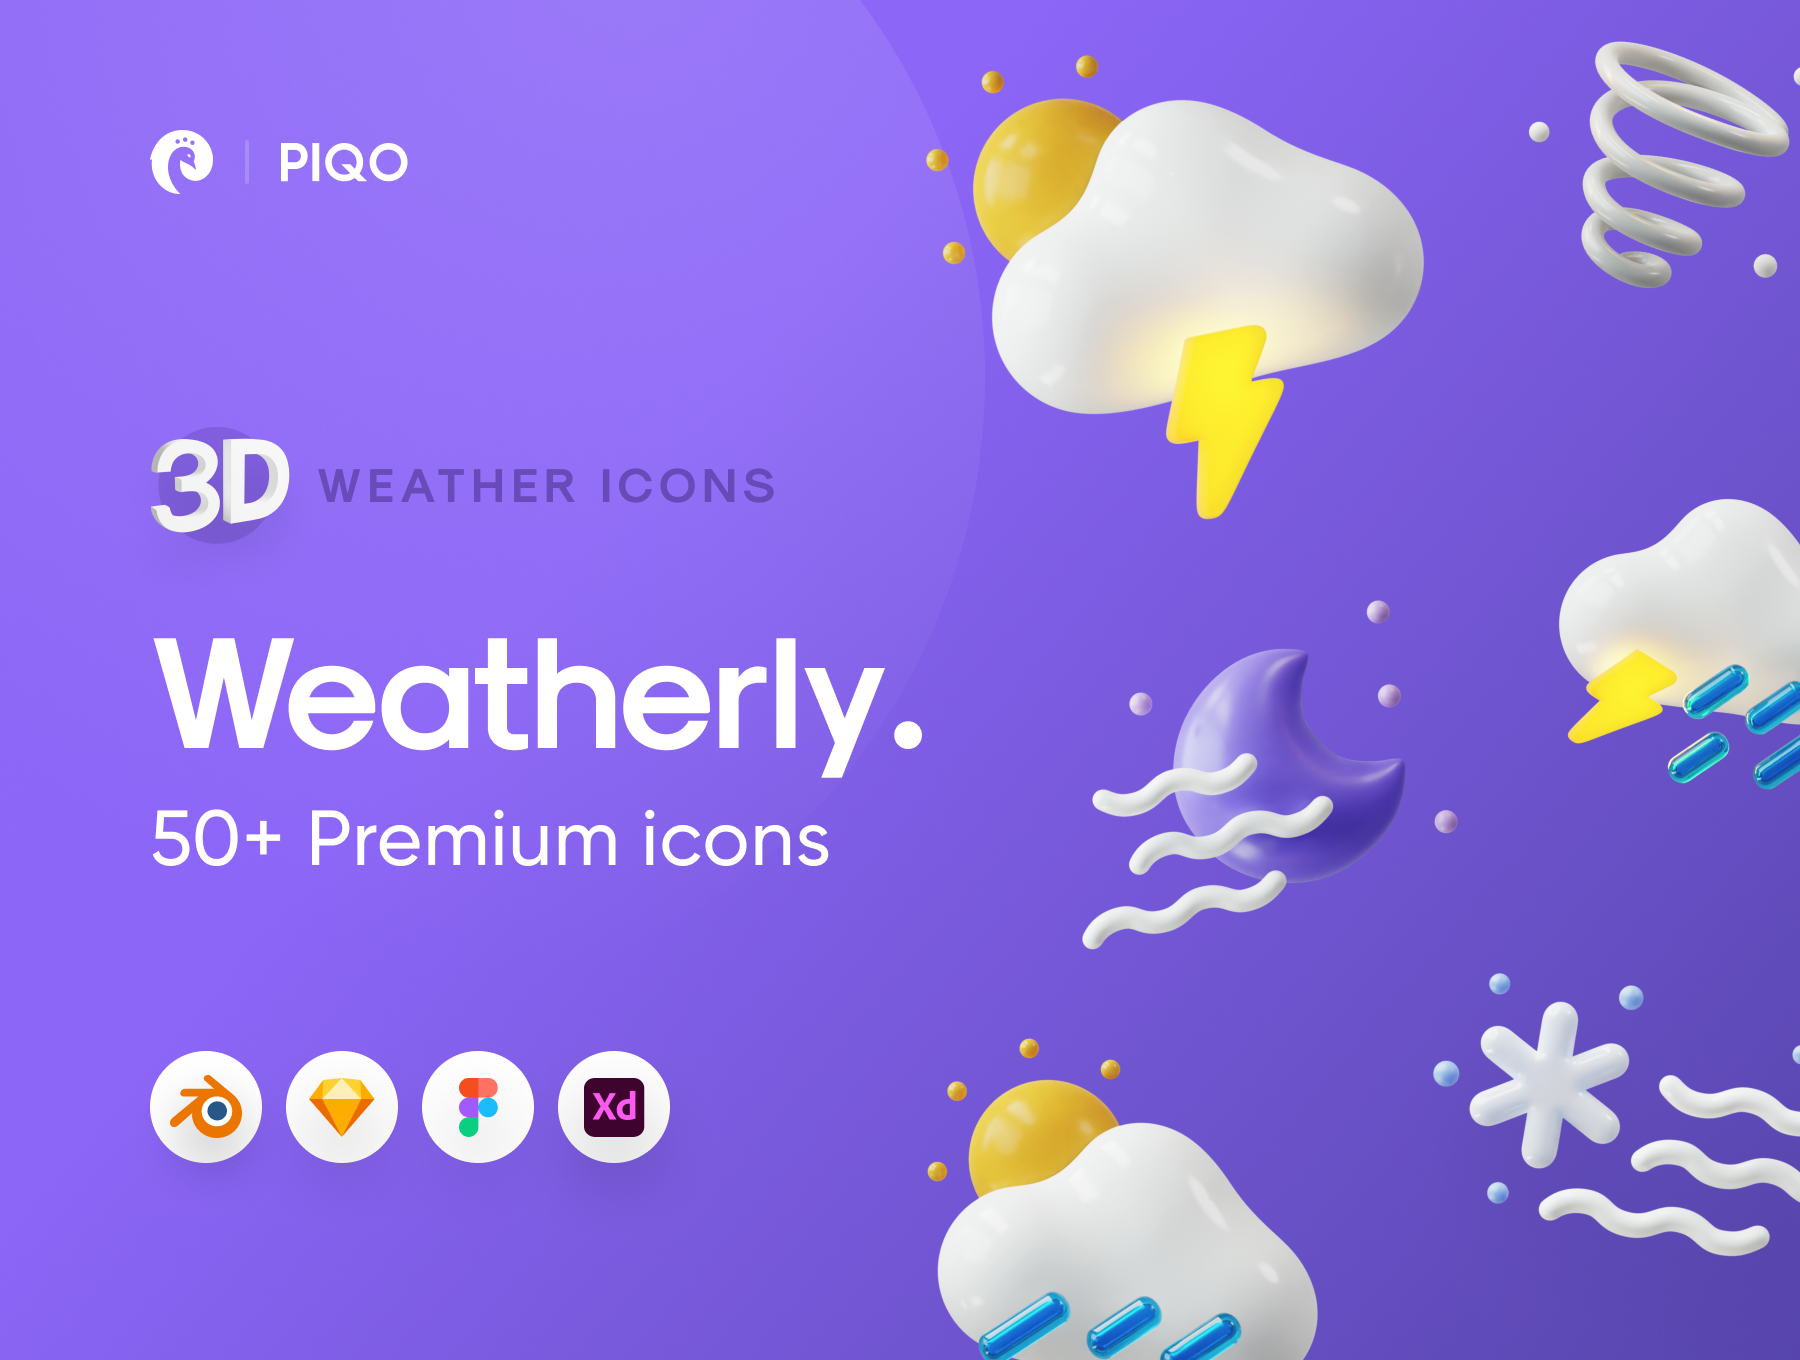 50多个3D高分辨率原始风格和粘土风格完美天气图标包 Weatherly 3D icons – 50+ Weather icons 图标素材 第15张